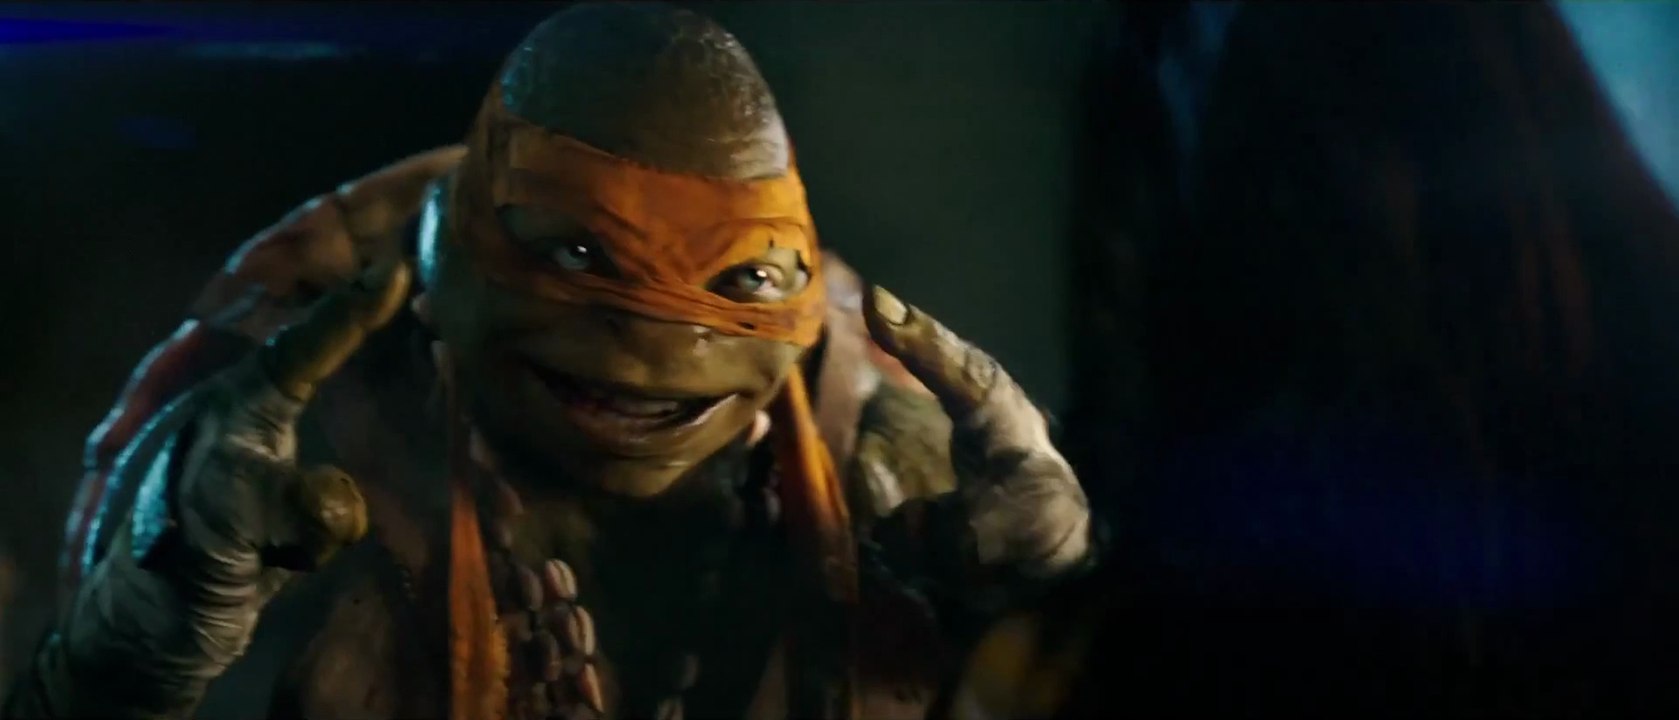 'Teenage Mutant Ninja Turtles' - Official Trailer (2014)